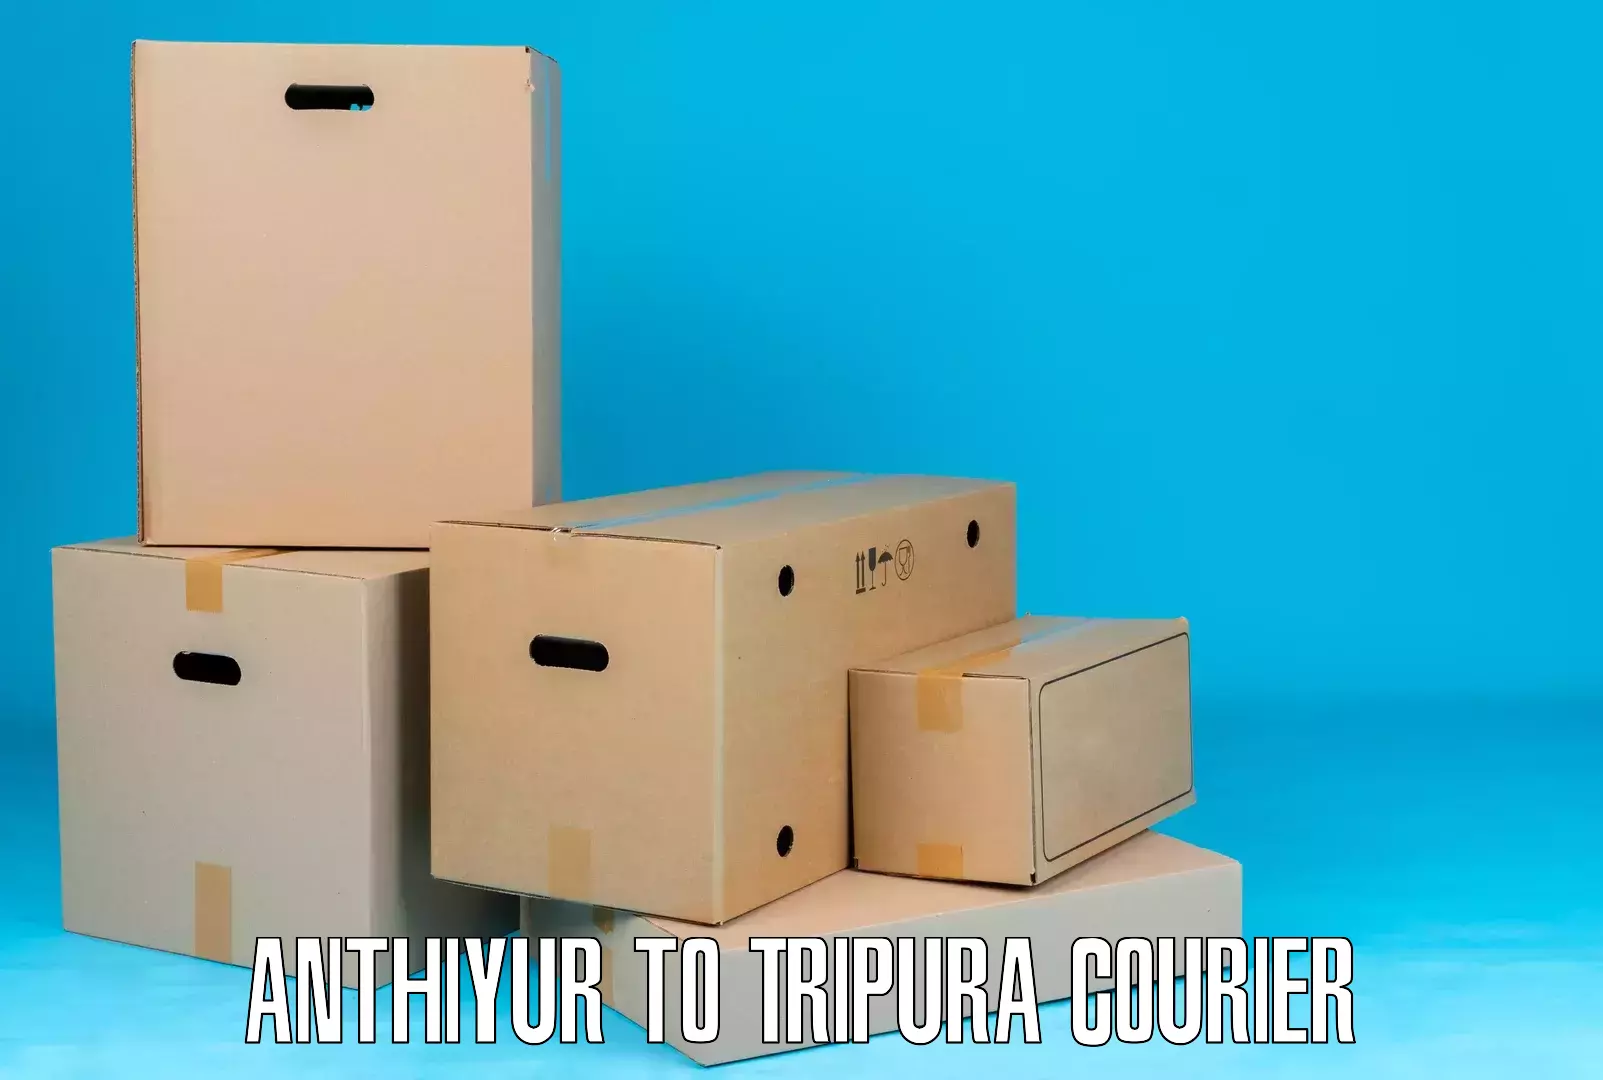 International courier networks Anthiyur to Bishalgarh